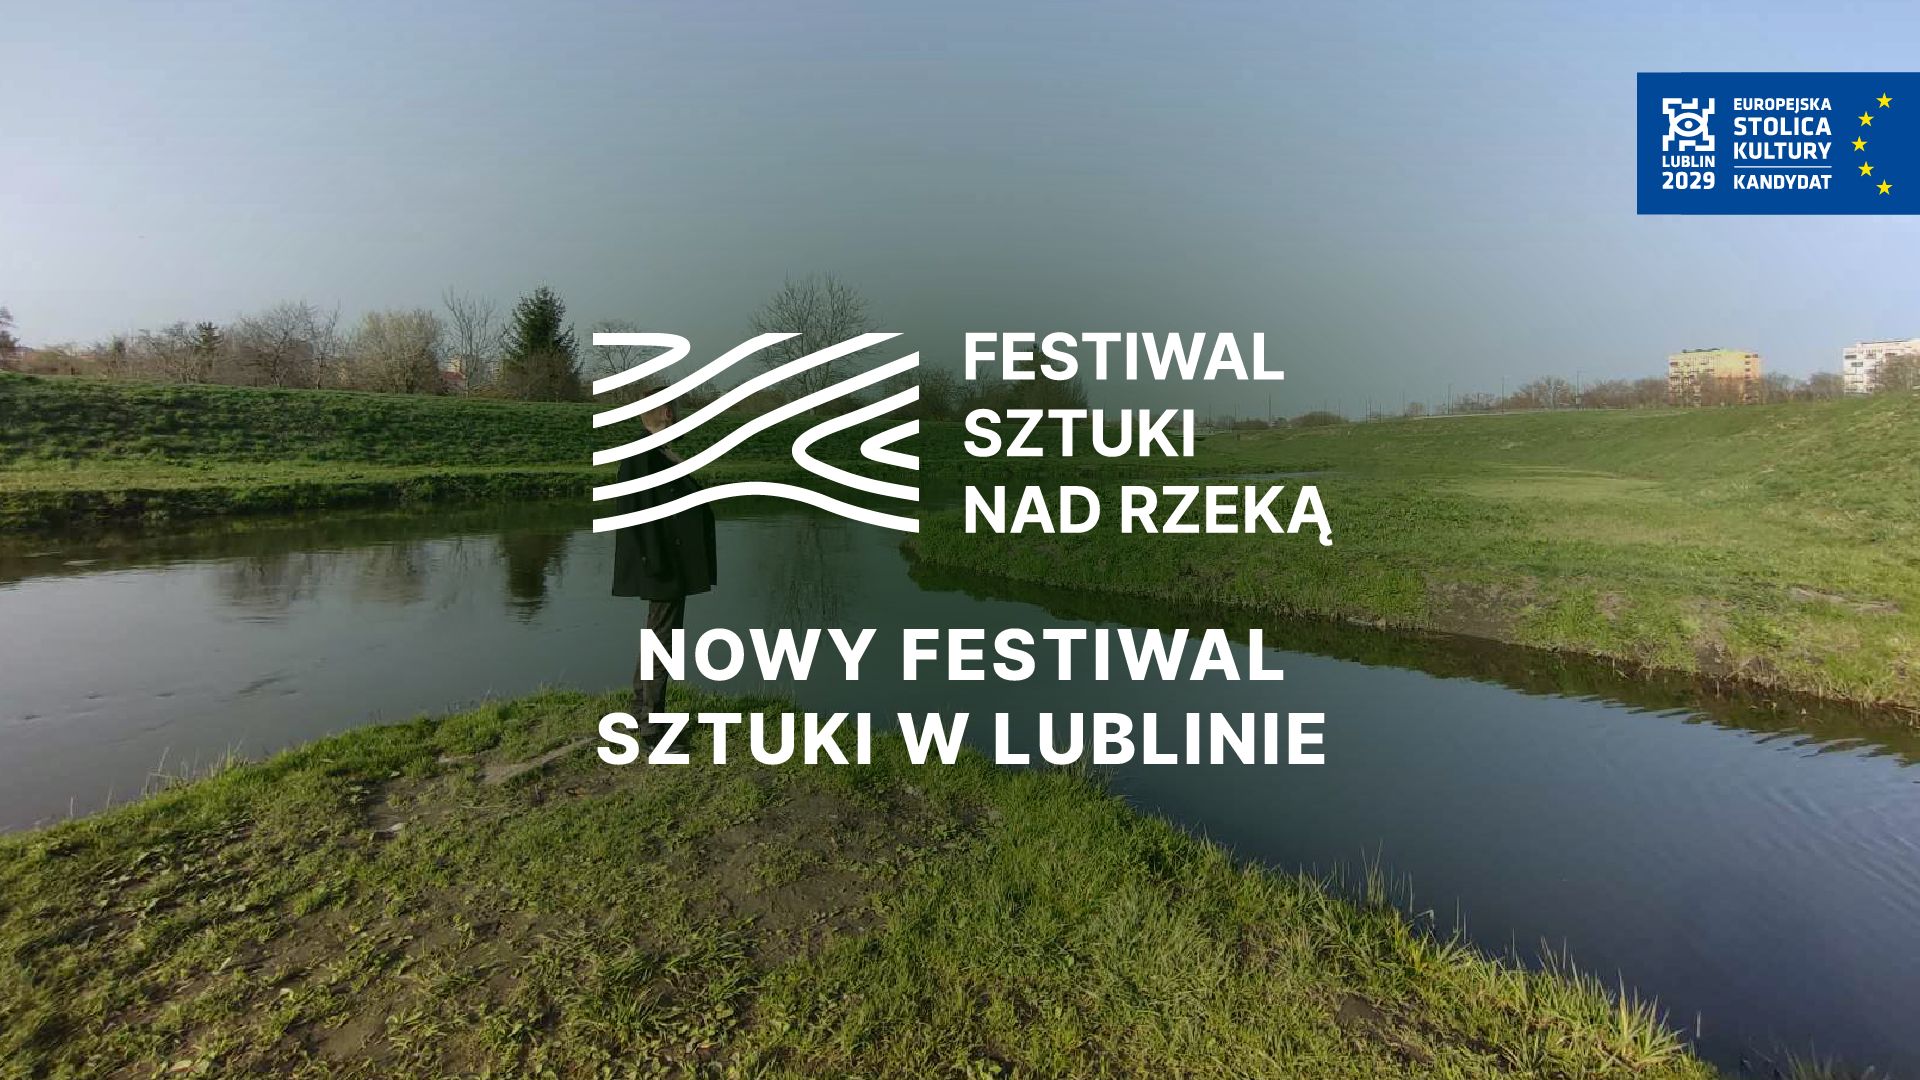 Przy rzece stoi mężczyzna. Napis: Festiwal Sztuki Nad Rzeką. Nowy Festiwal Sztuki w Lublinie.